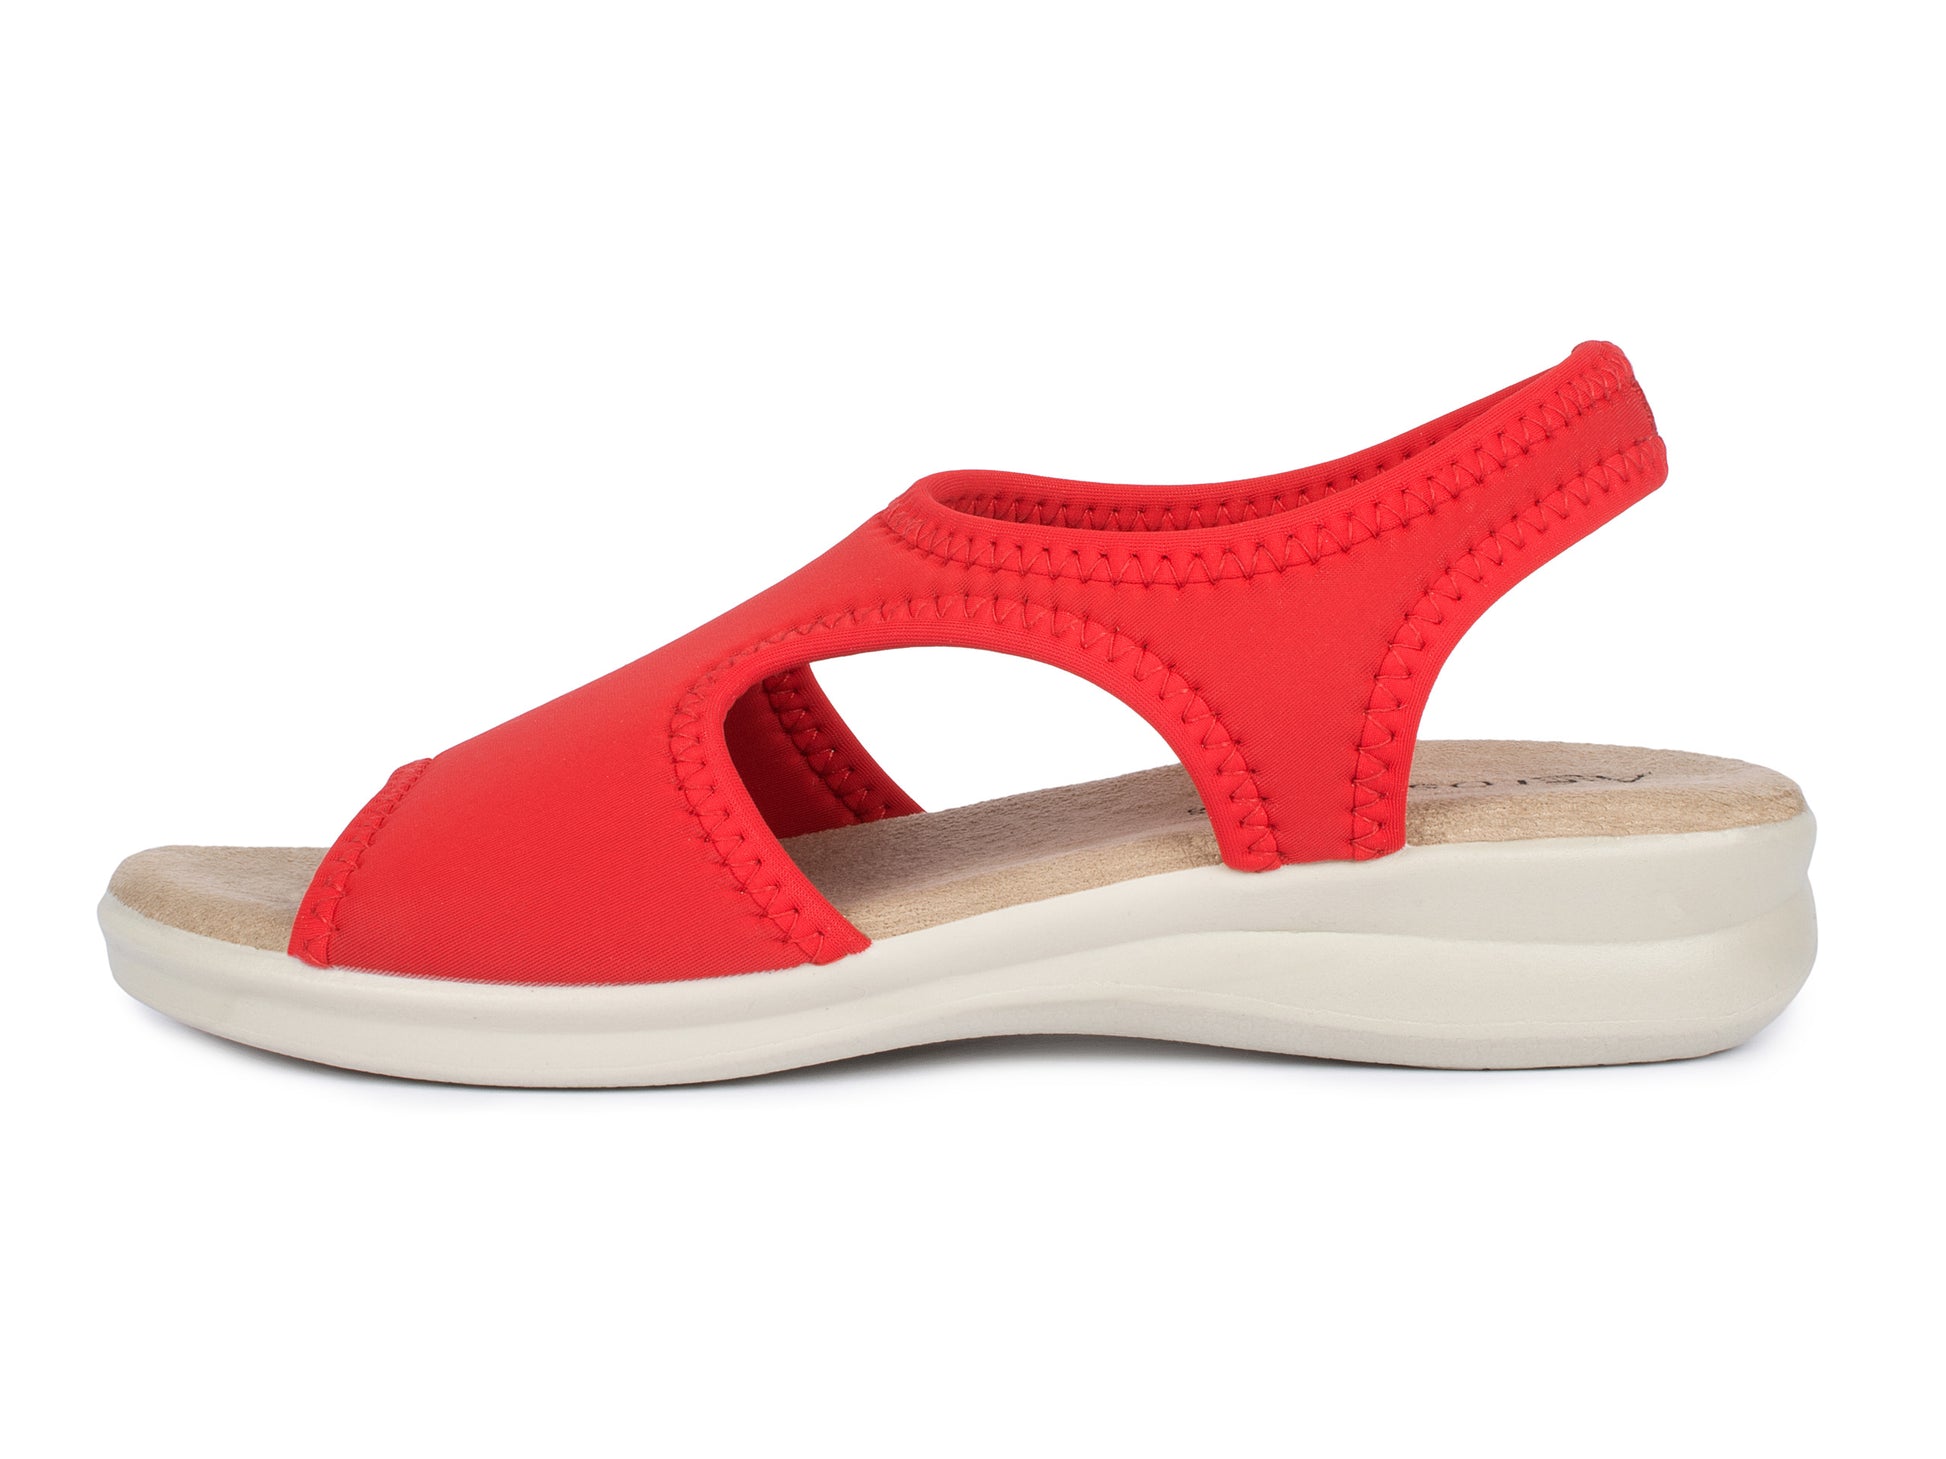 Damen Stretch Sandalette Modell Stretch 05 von Aerosoft in der Farbe rot von der Außen-Seite